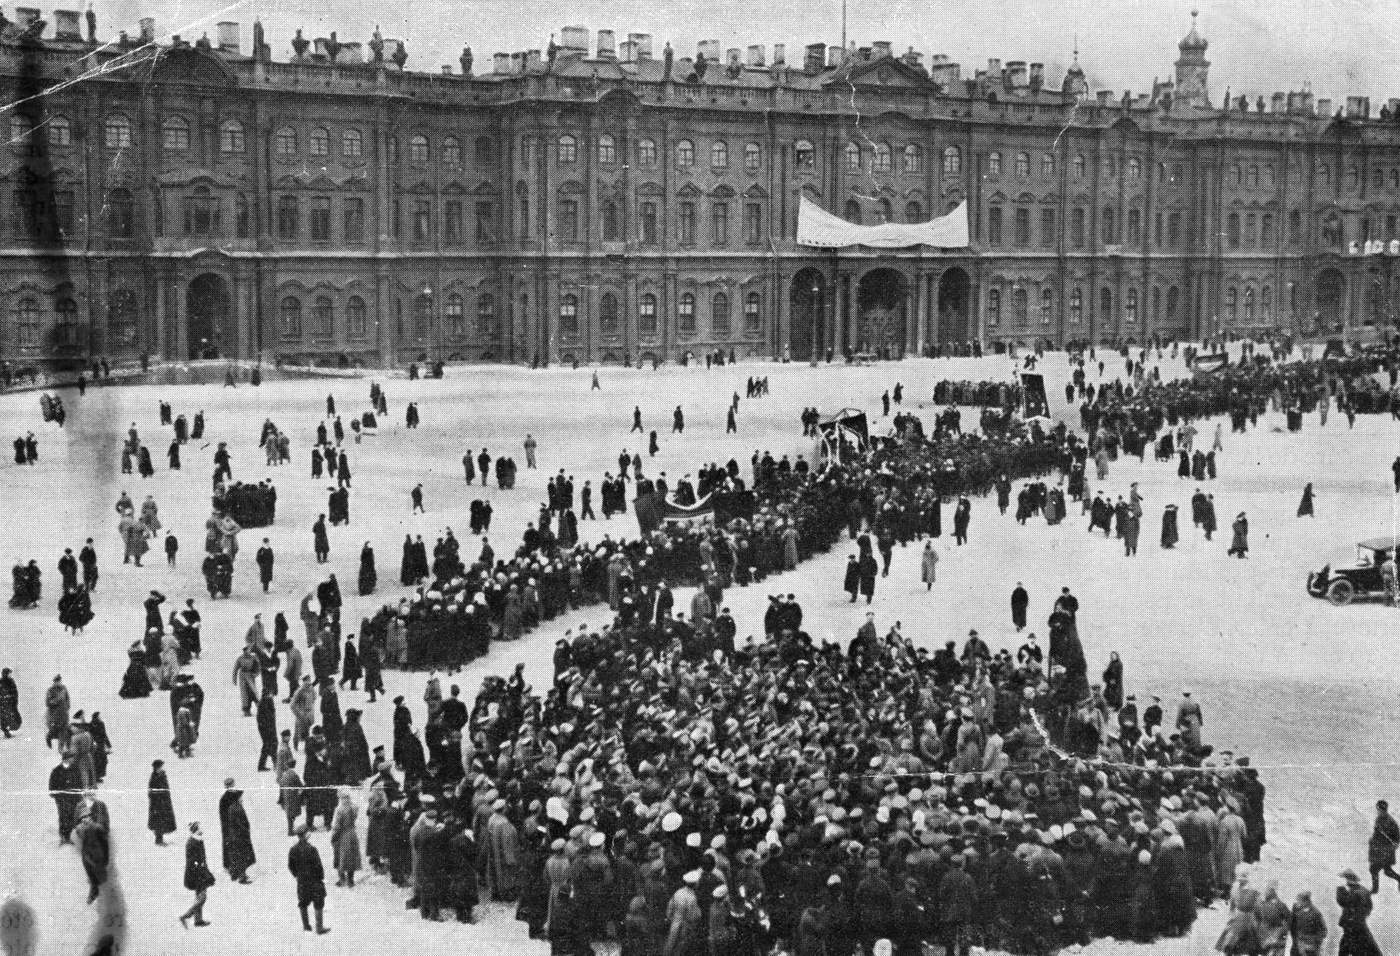 Çar ve ailesinin yaşadığı Kışlık Saray, Şubat Devrimi&#39;nin ardından Geçici Hükümet&#39;in merkezi olmuştu